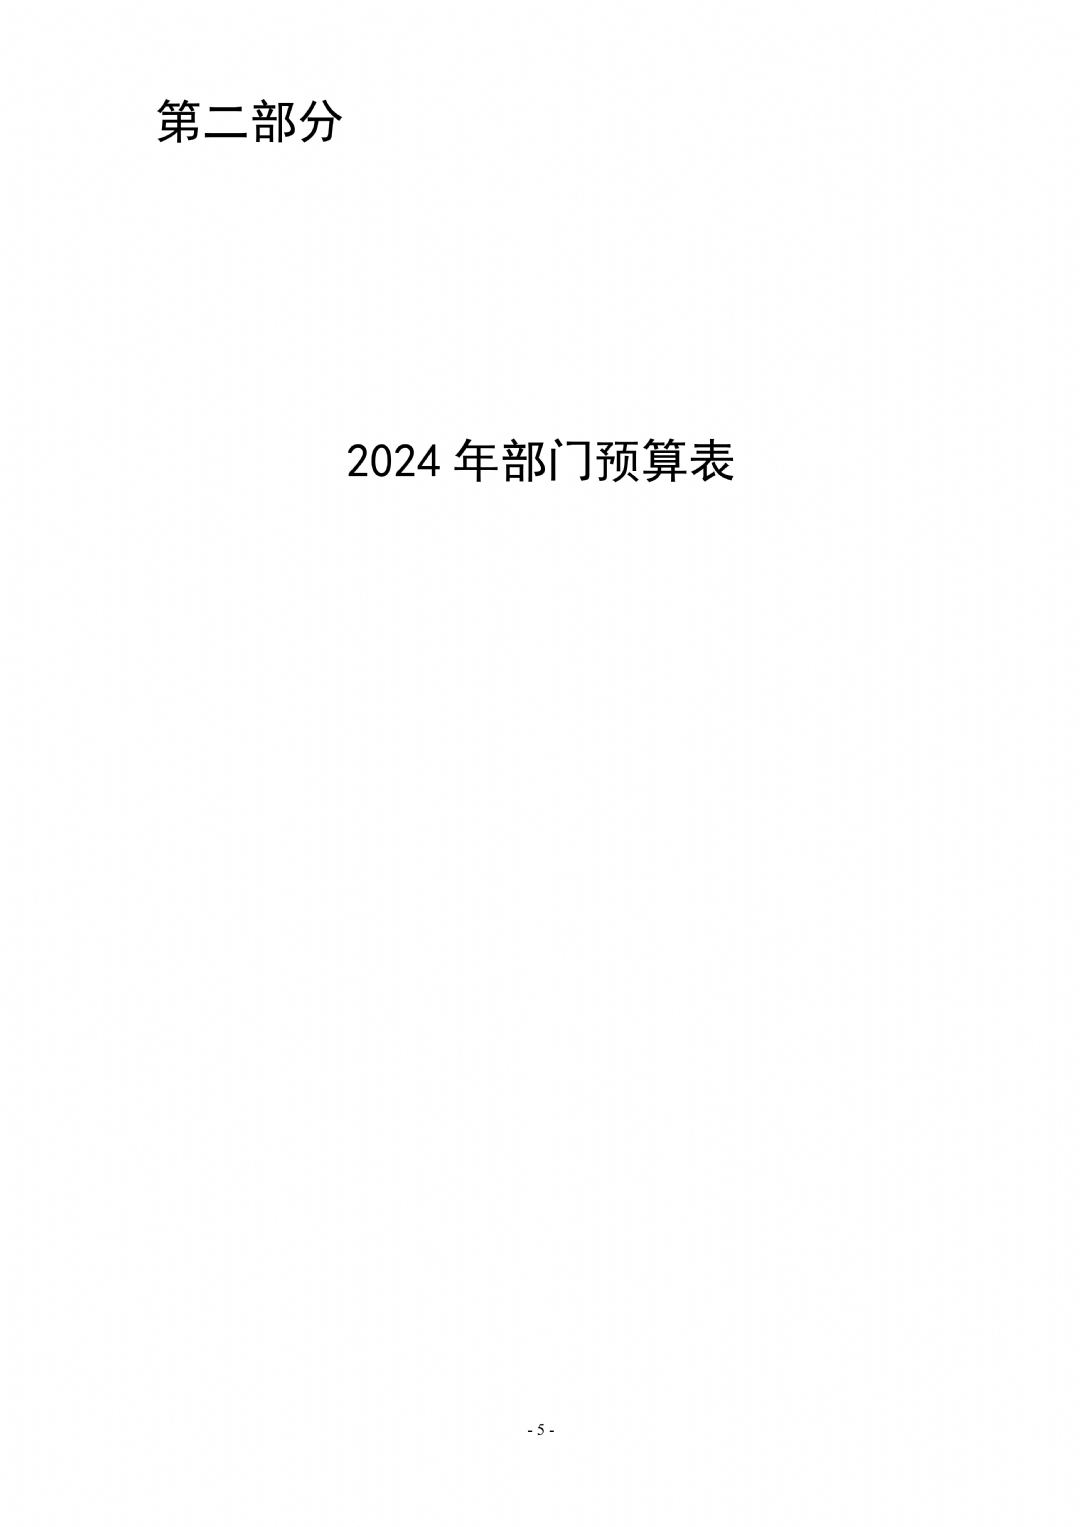 2024年枣庄市红十字会部门预算_05